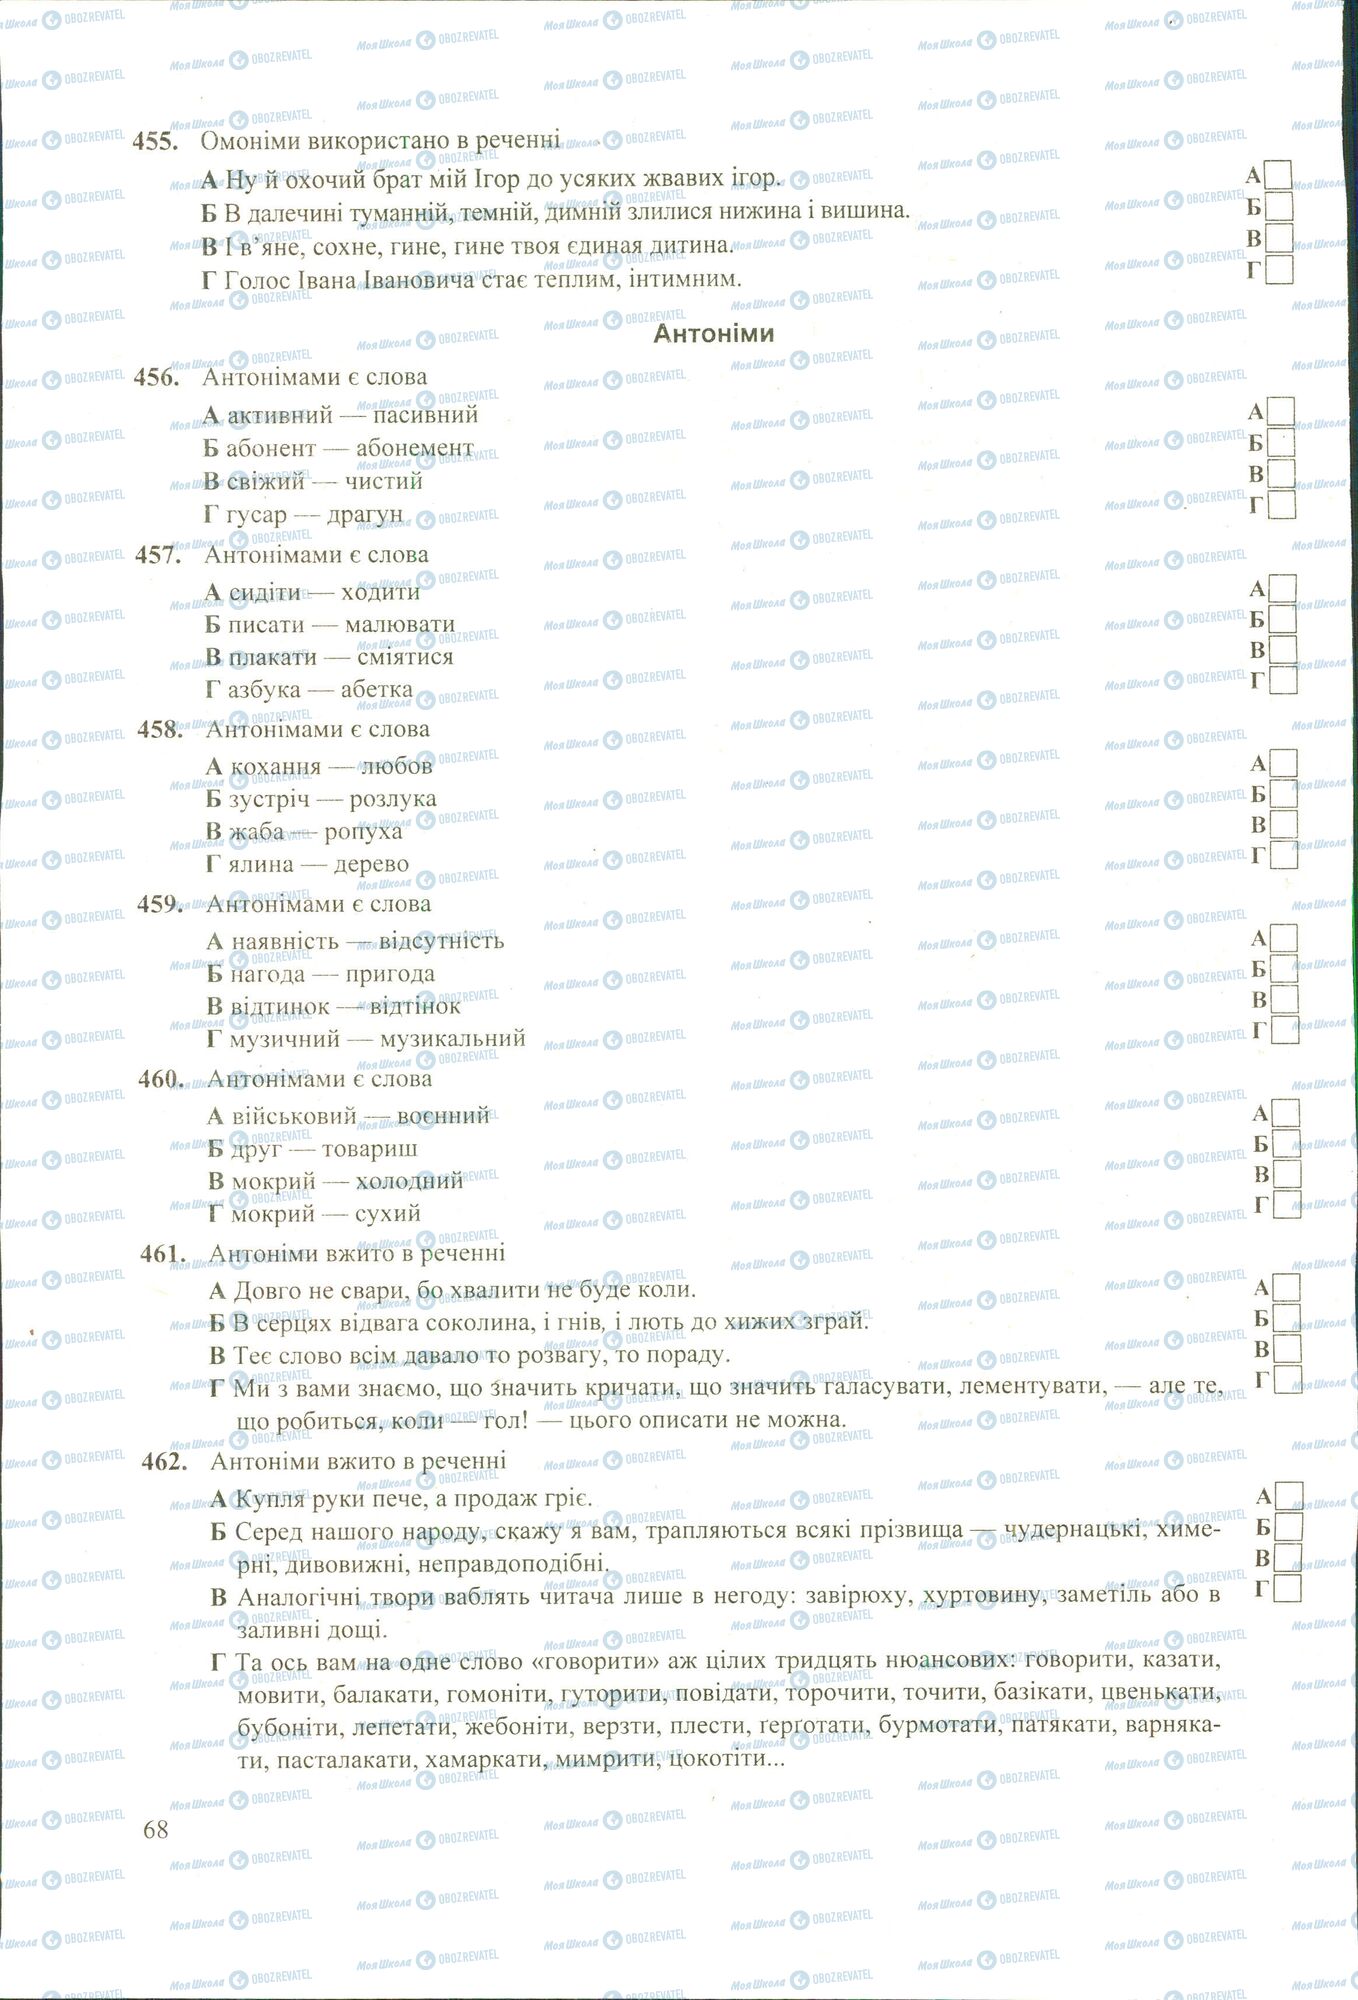 ЗНО Укр мова 11 класс страница 456-462